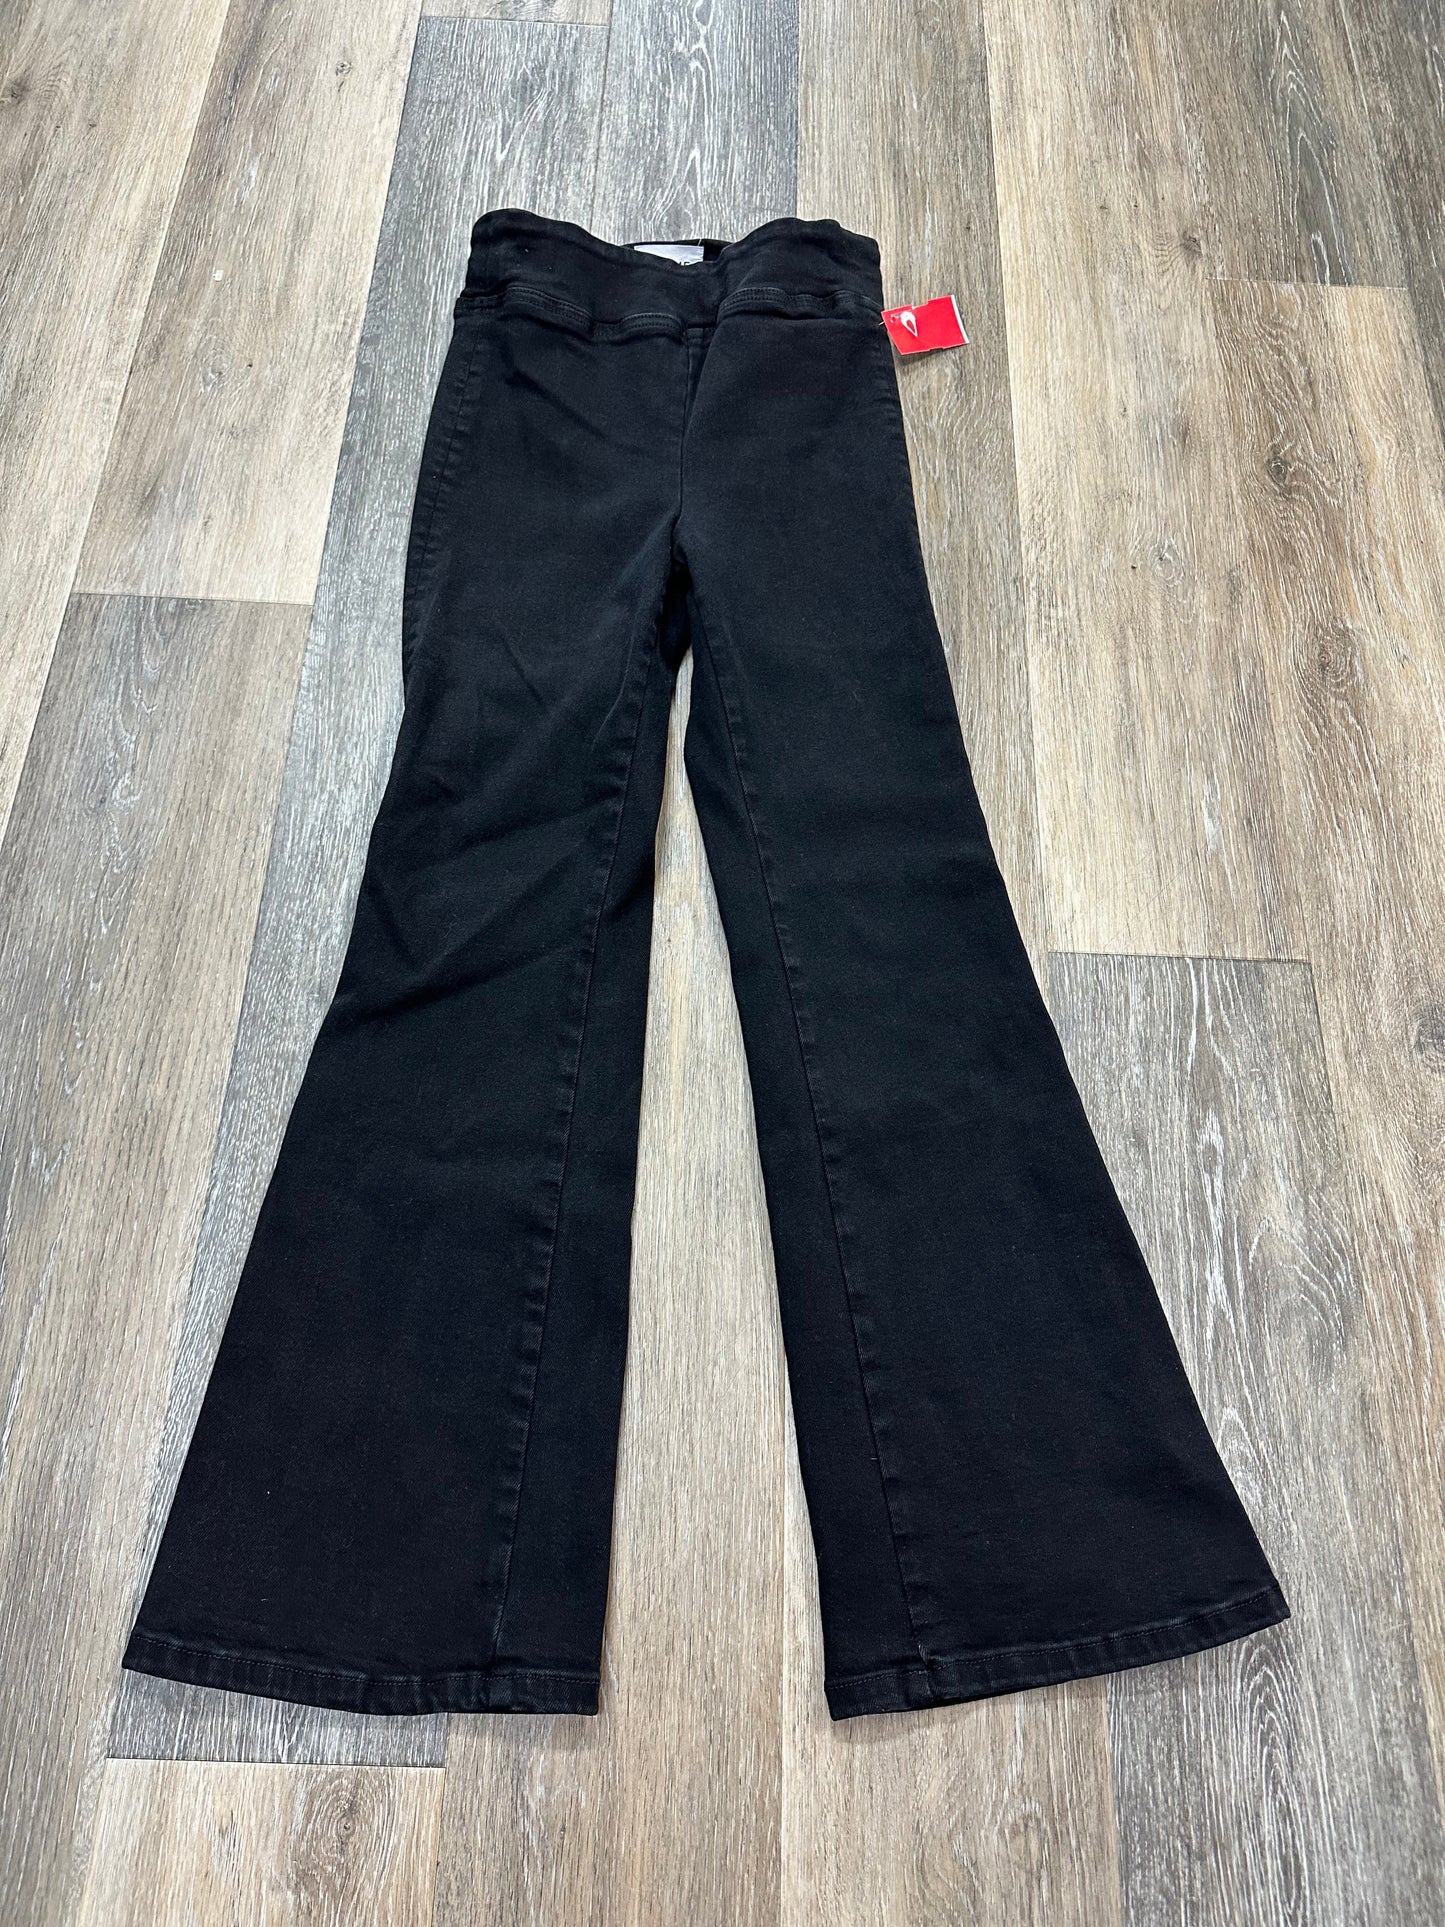 Black Jeans Designer Frame, Size S